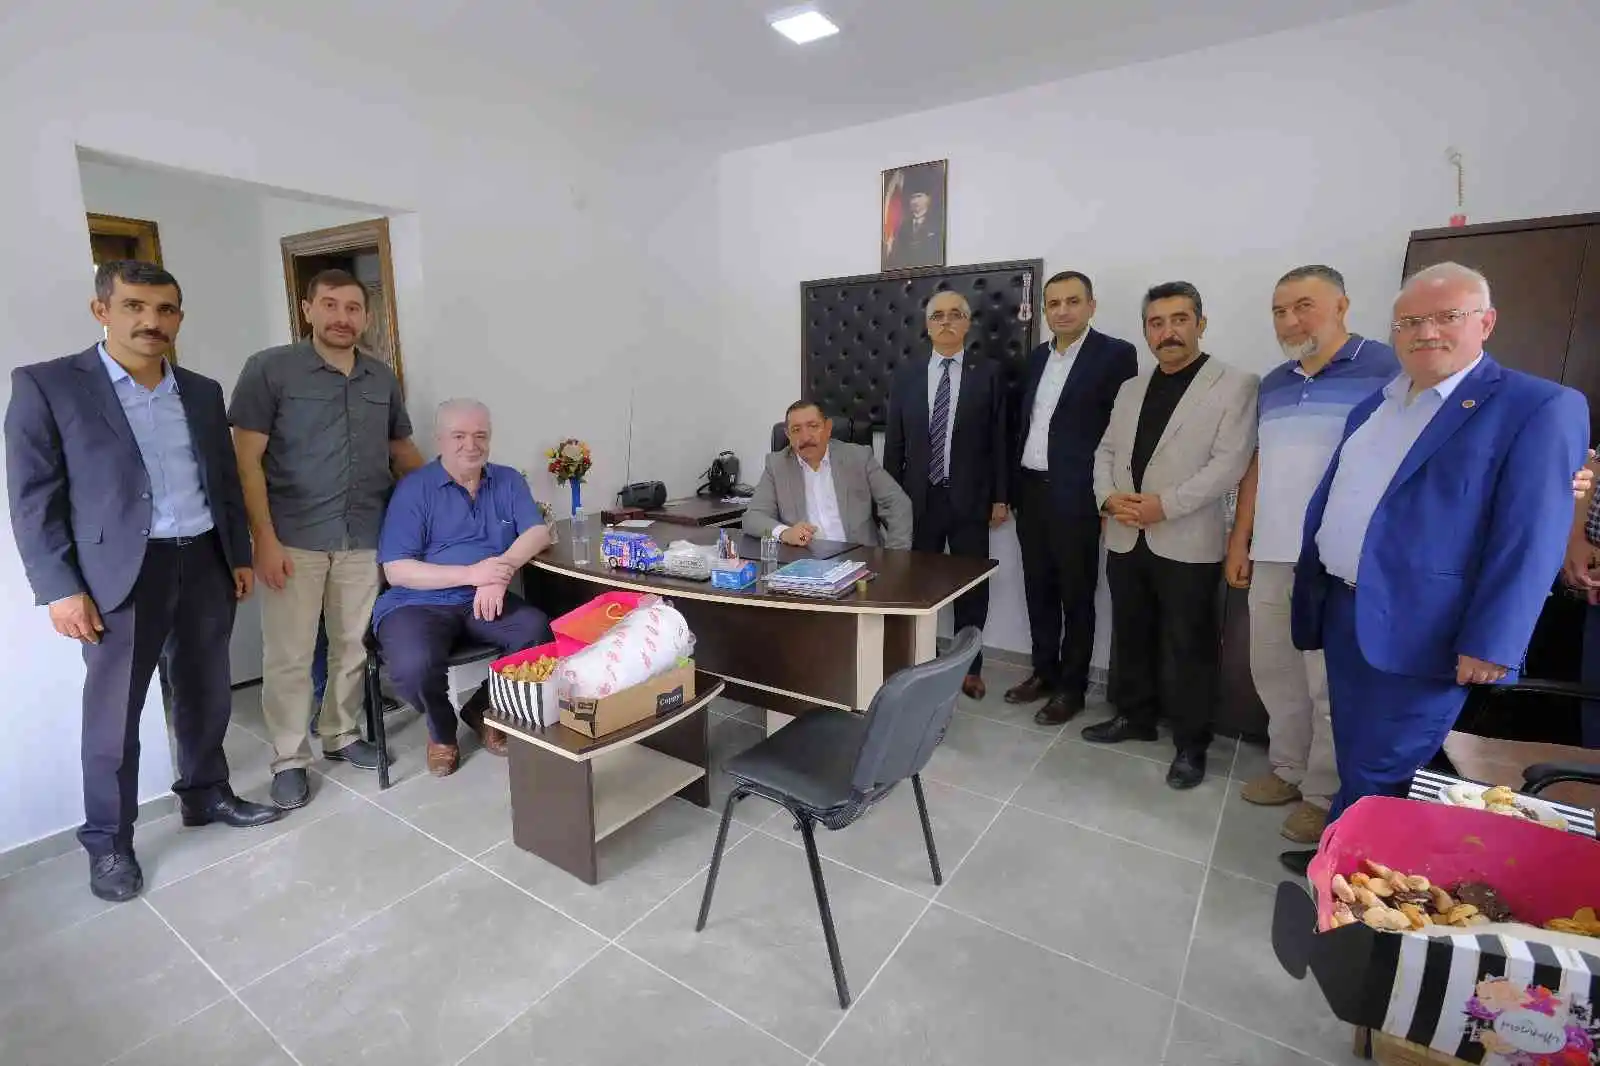 Kastamonu Belediyesinin Olukbaşı Hizmet Binası törenle açıldı
